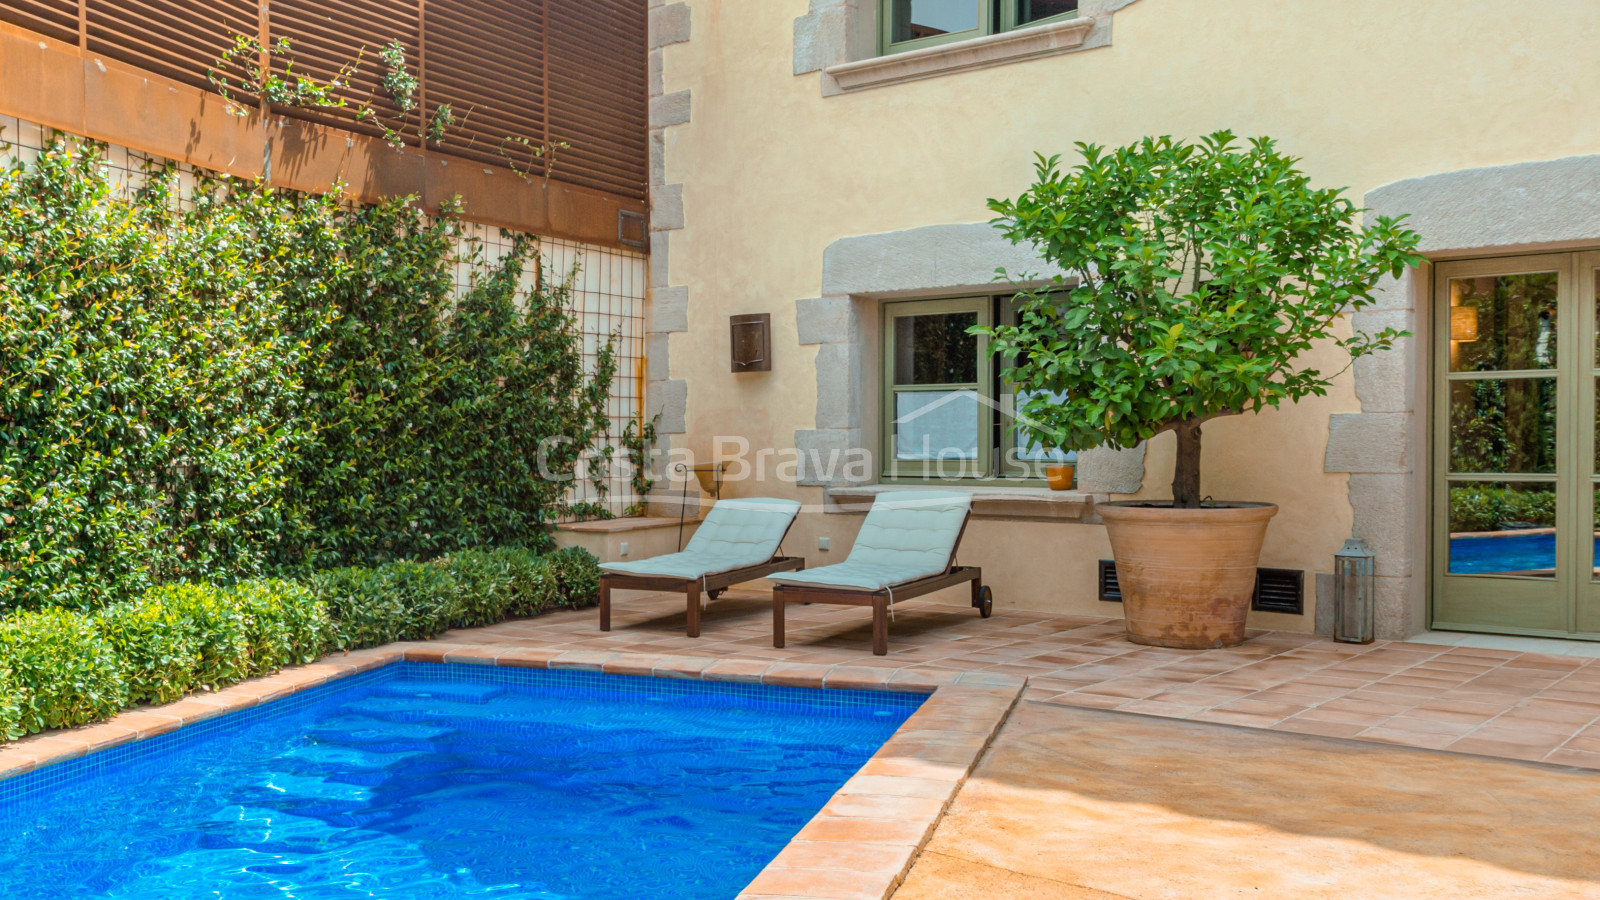 Maison de village entièrement rénovée à vendre à Begur avec 200 m² de cour avec piscine